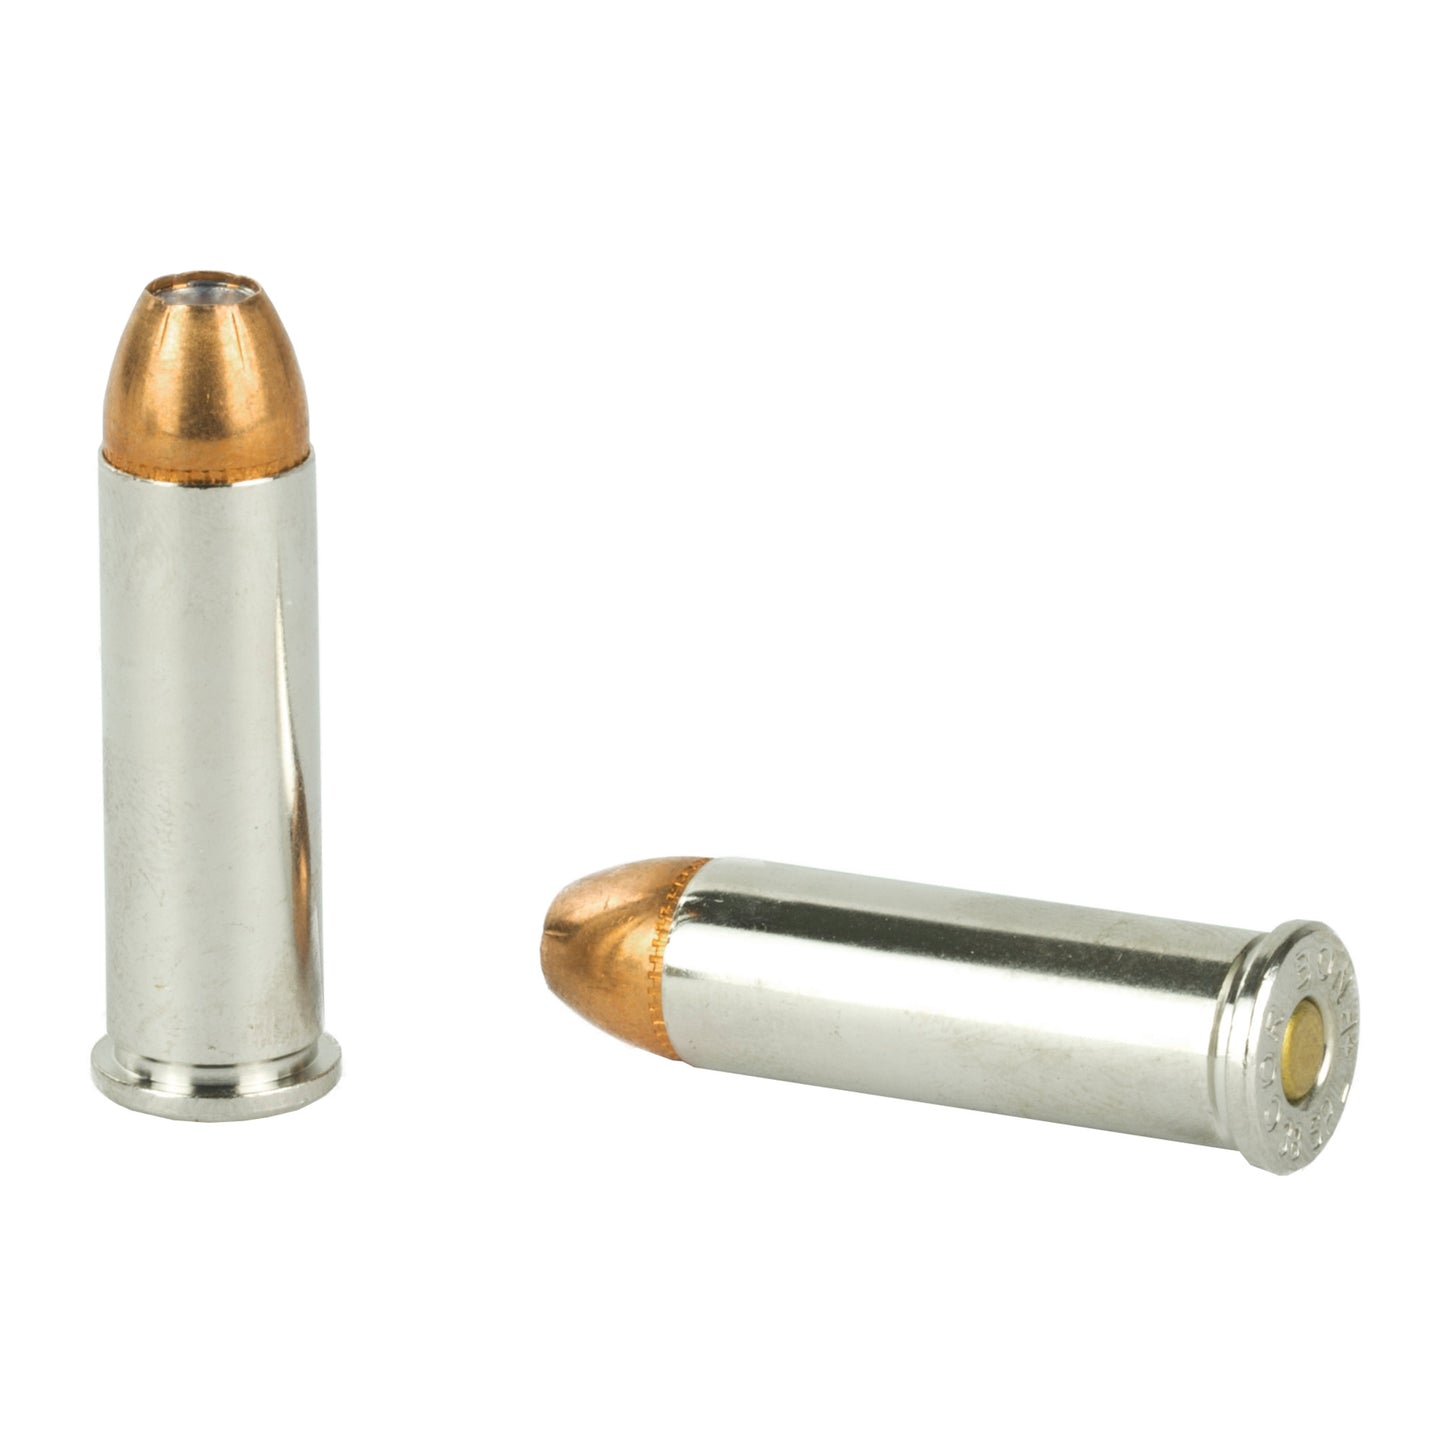 DoubleTap Ammunition, Colt Defense, 38 Special+P, 110 Grain, Solid Copper Hollow Point, 20 Round Box